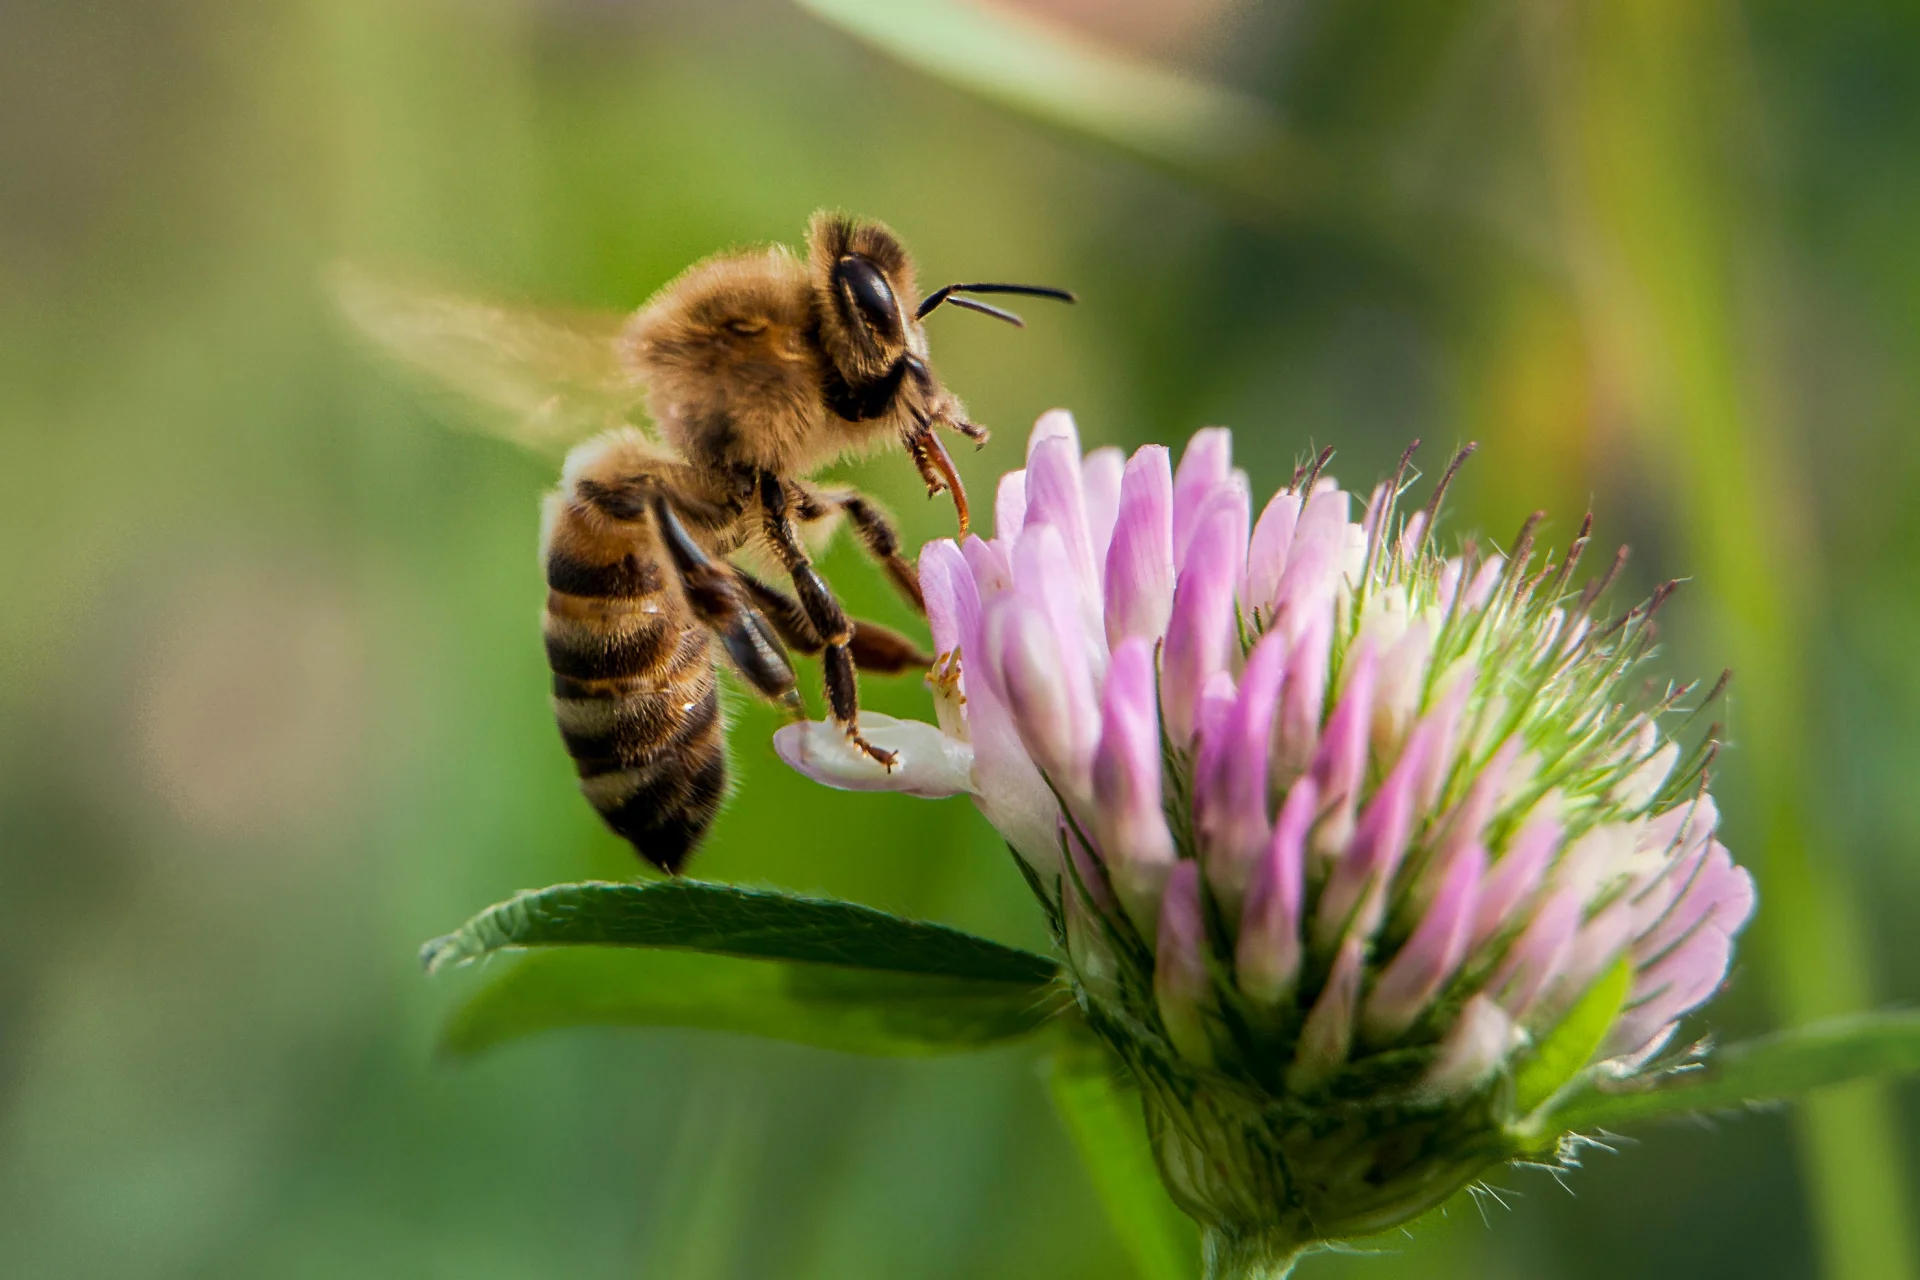 L'ape atterra su un fiore